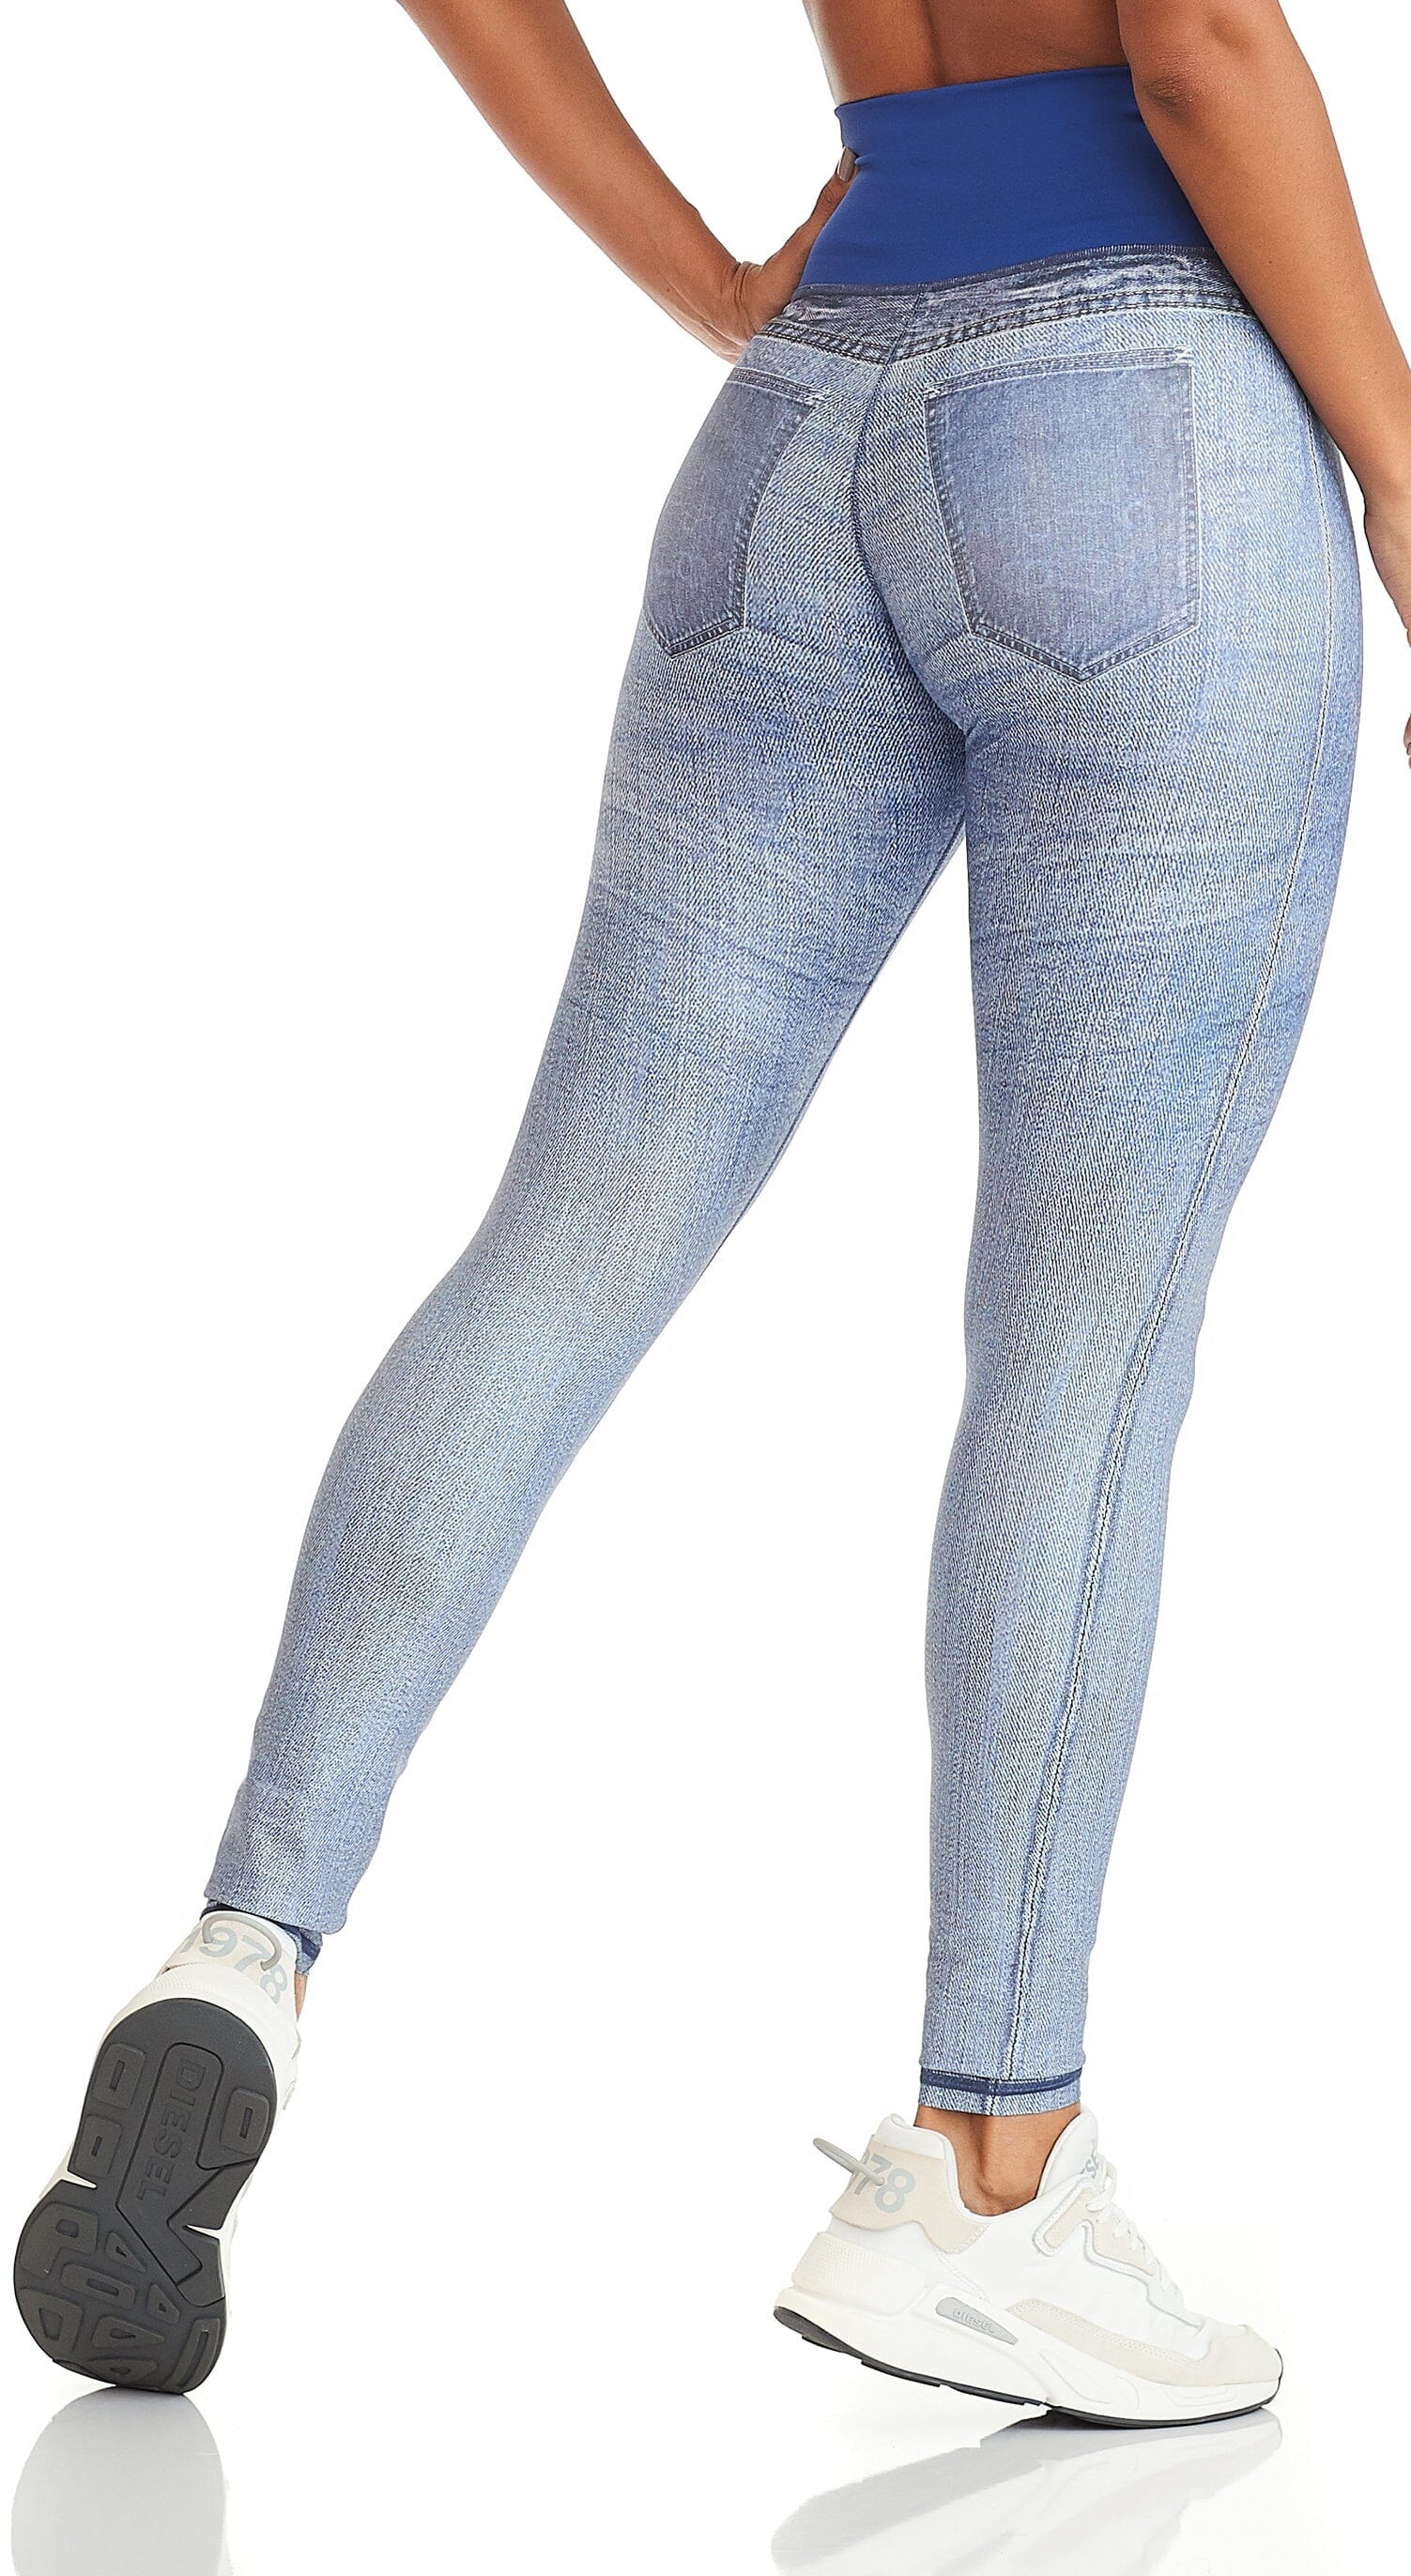  Women's Denim Print Fake Jeans Seamless Full Length